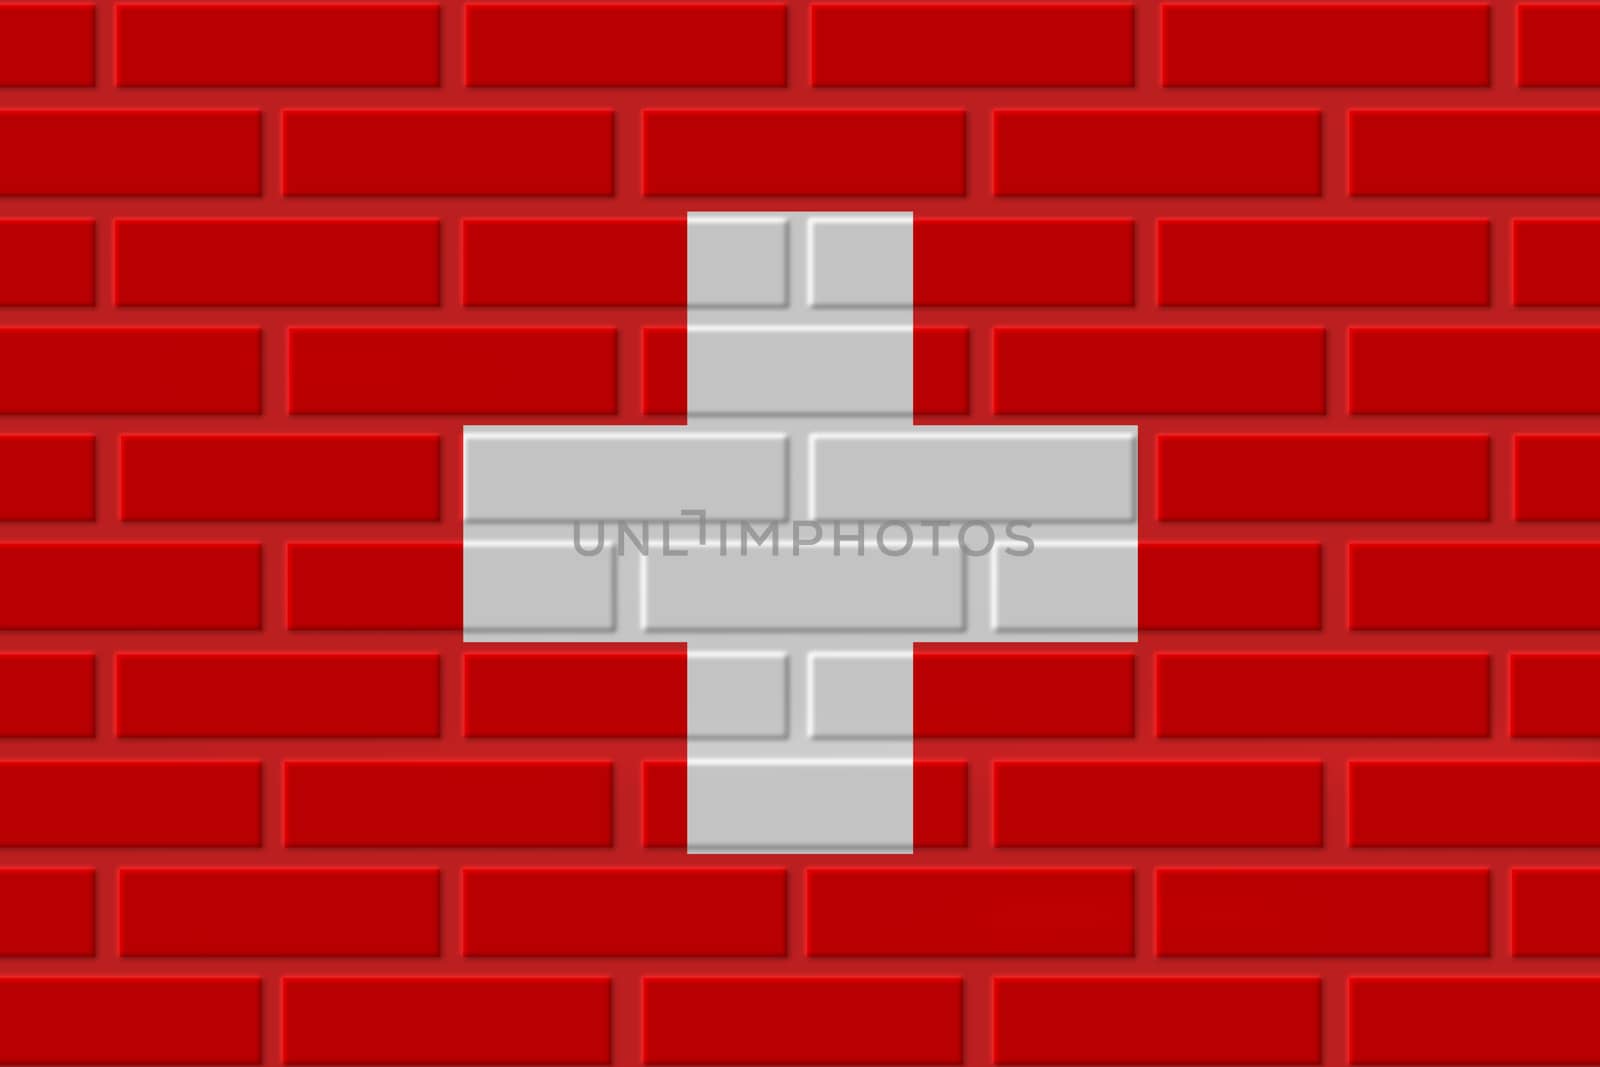 Switzerland painted flag. Patriotic brick flag illustration background. National flag of Switzerland